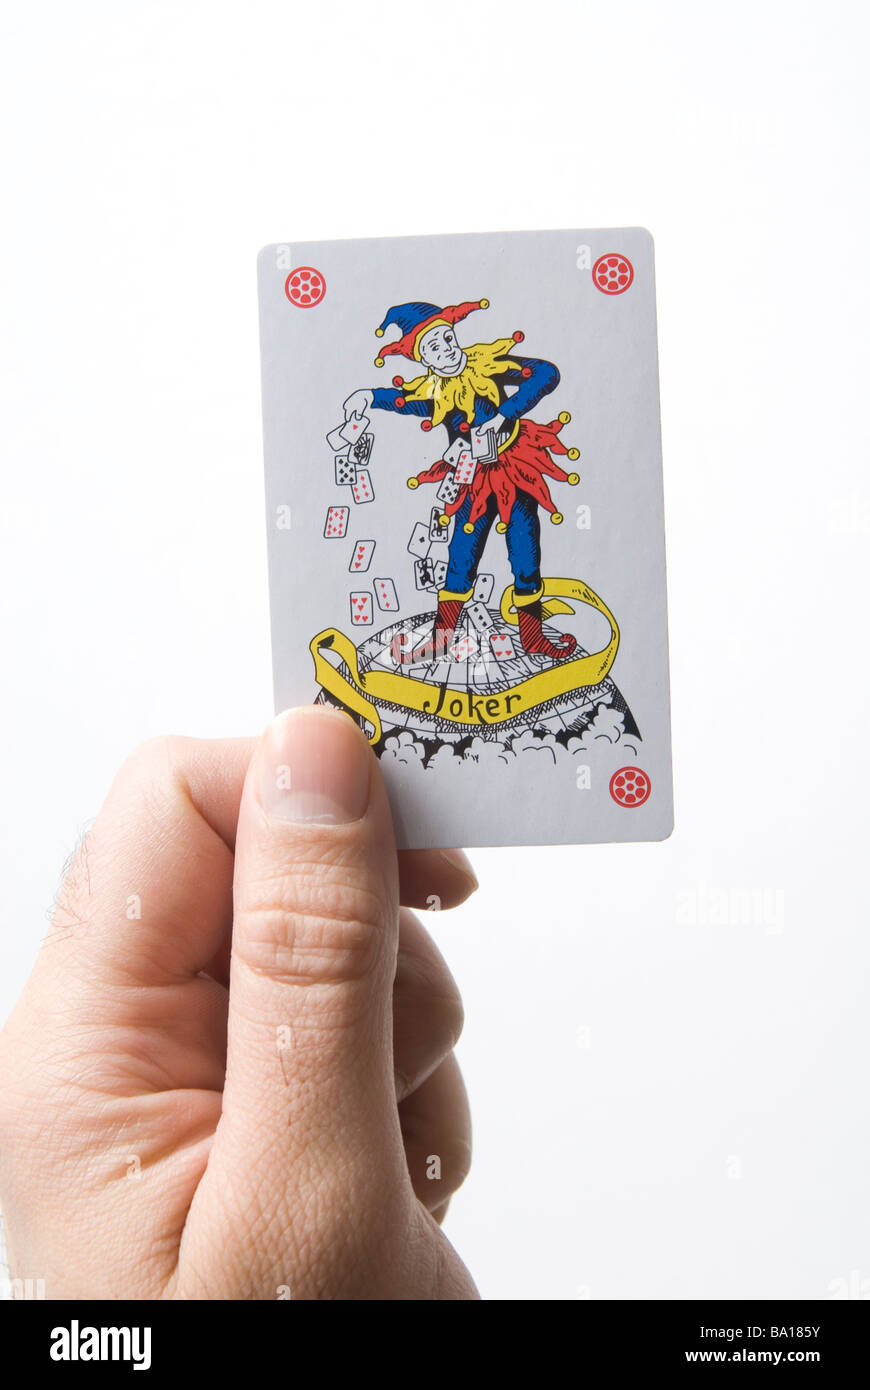 Mannes Hand mit fünf Karten spielen (ein paar schlechte), isoliert auf  weißem Hintergrund Stockfotografie - Alamy